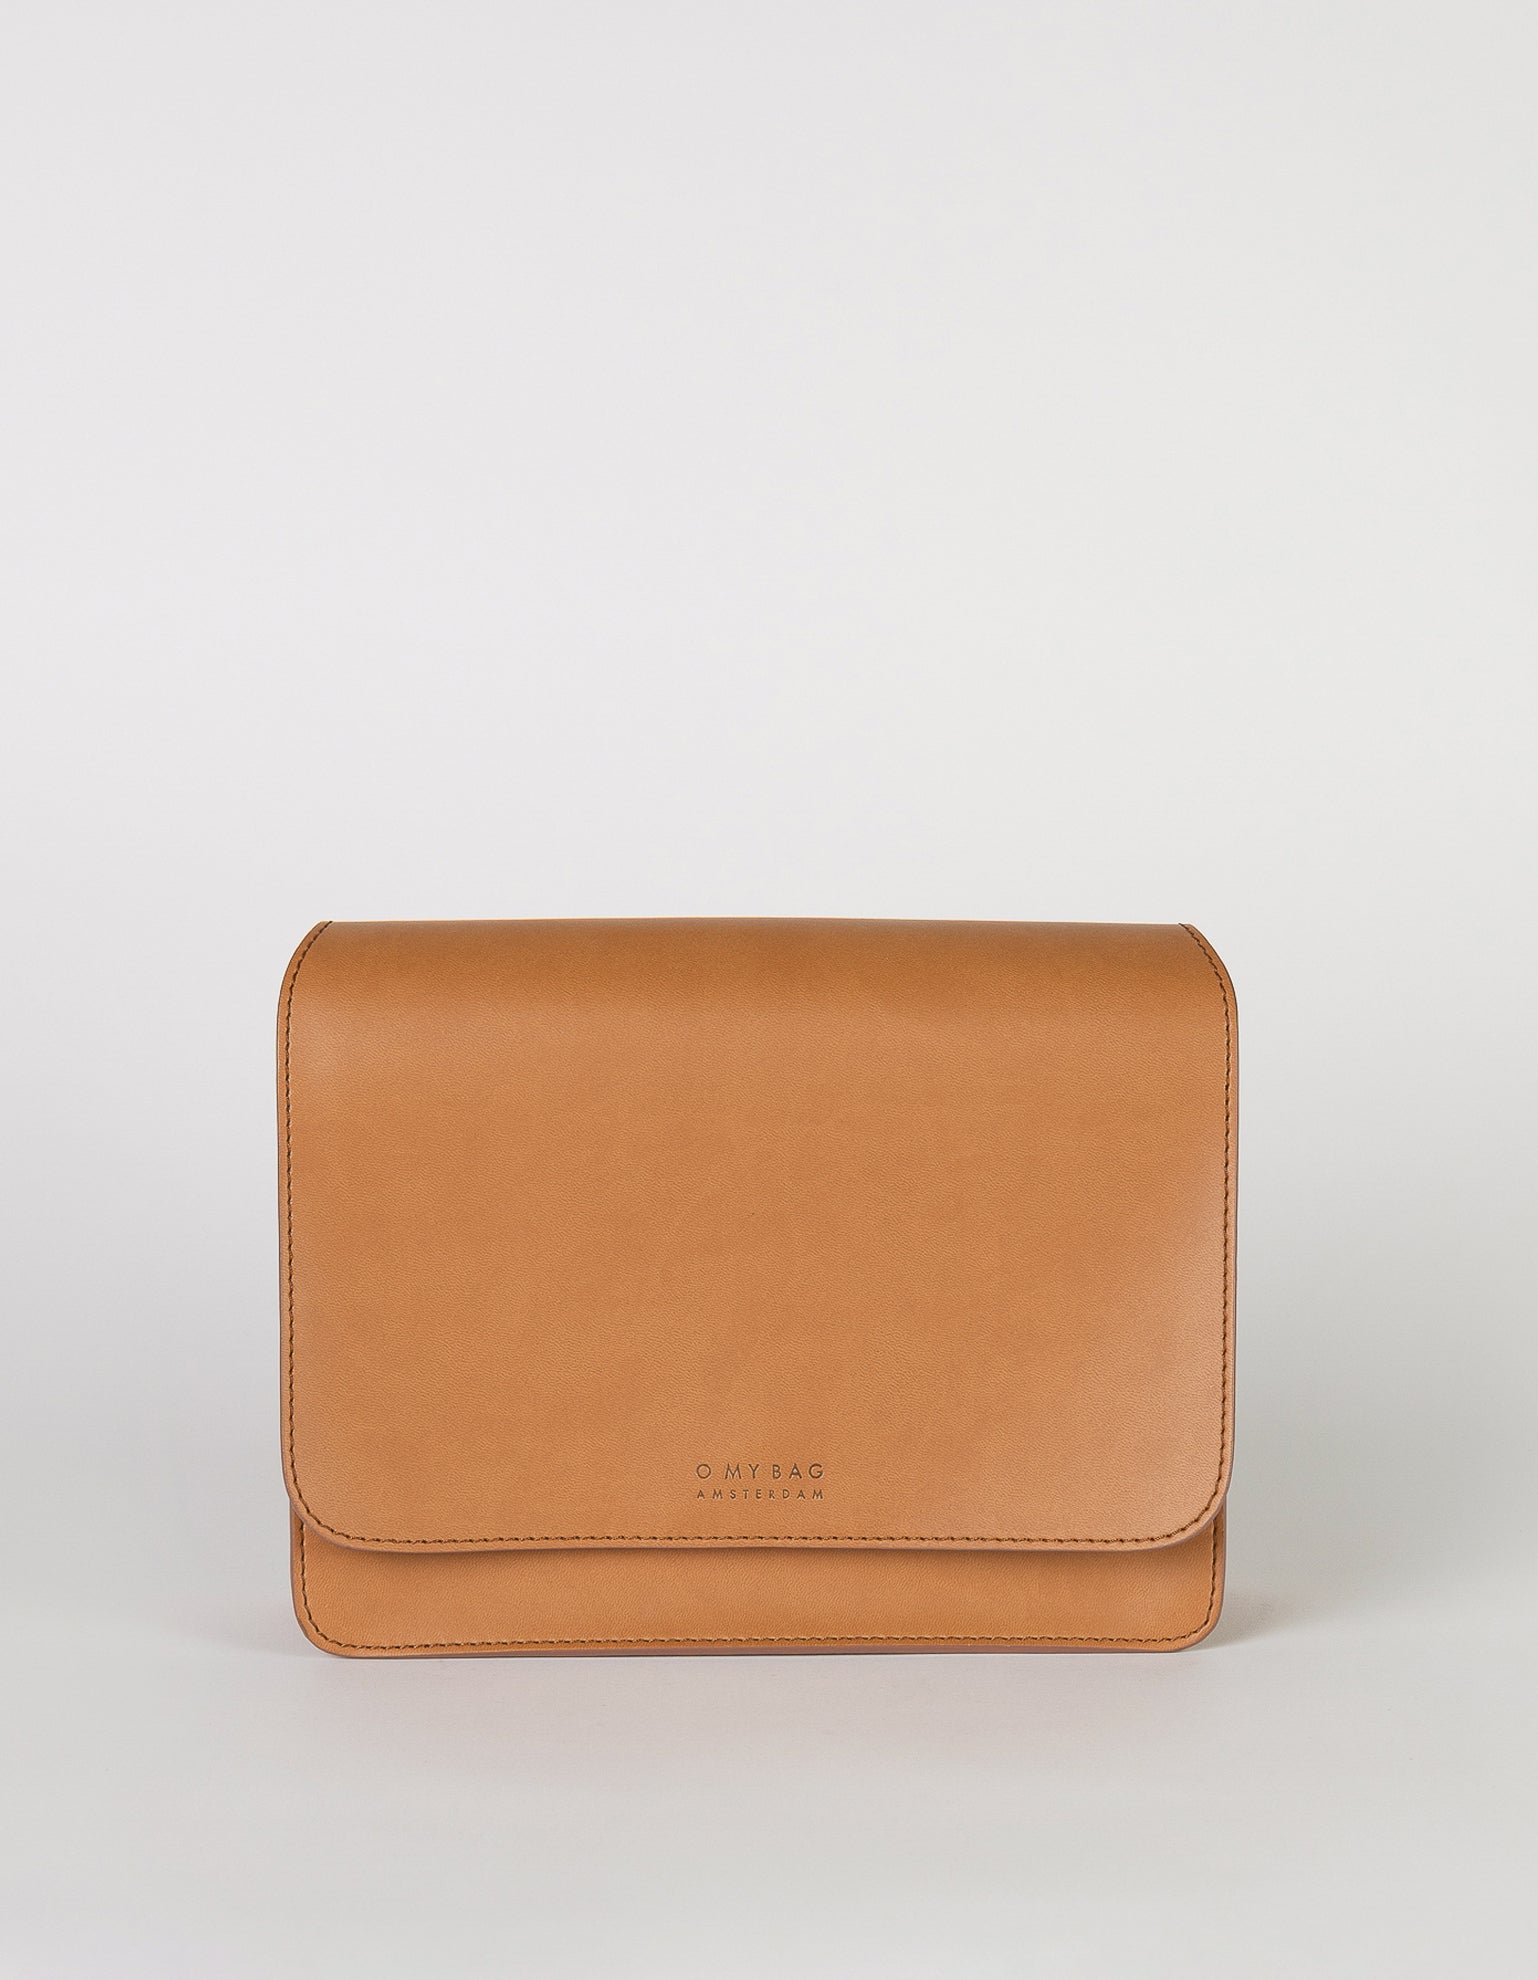 Audrey Apple Vegan Leather Cognac Rectangle Ladies Handbag, Front product image.